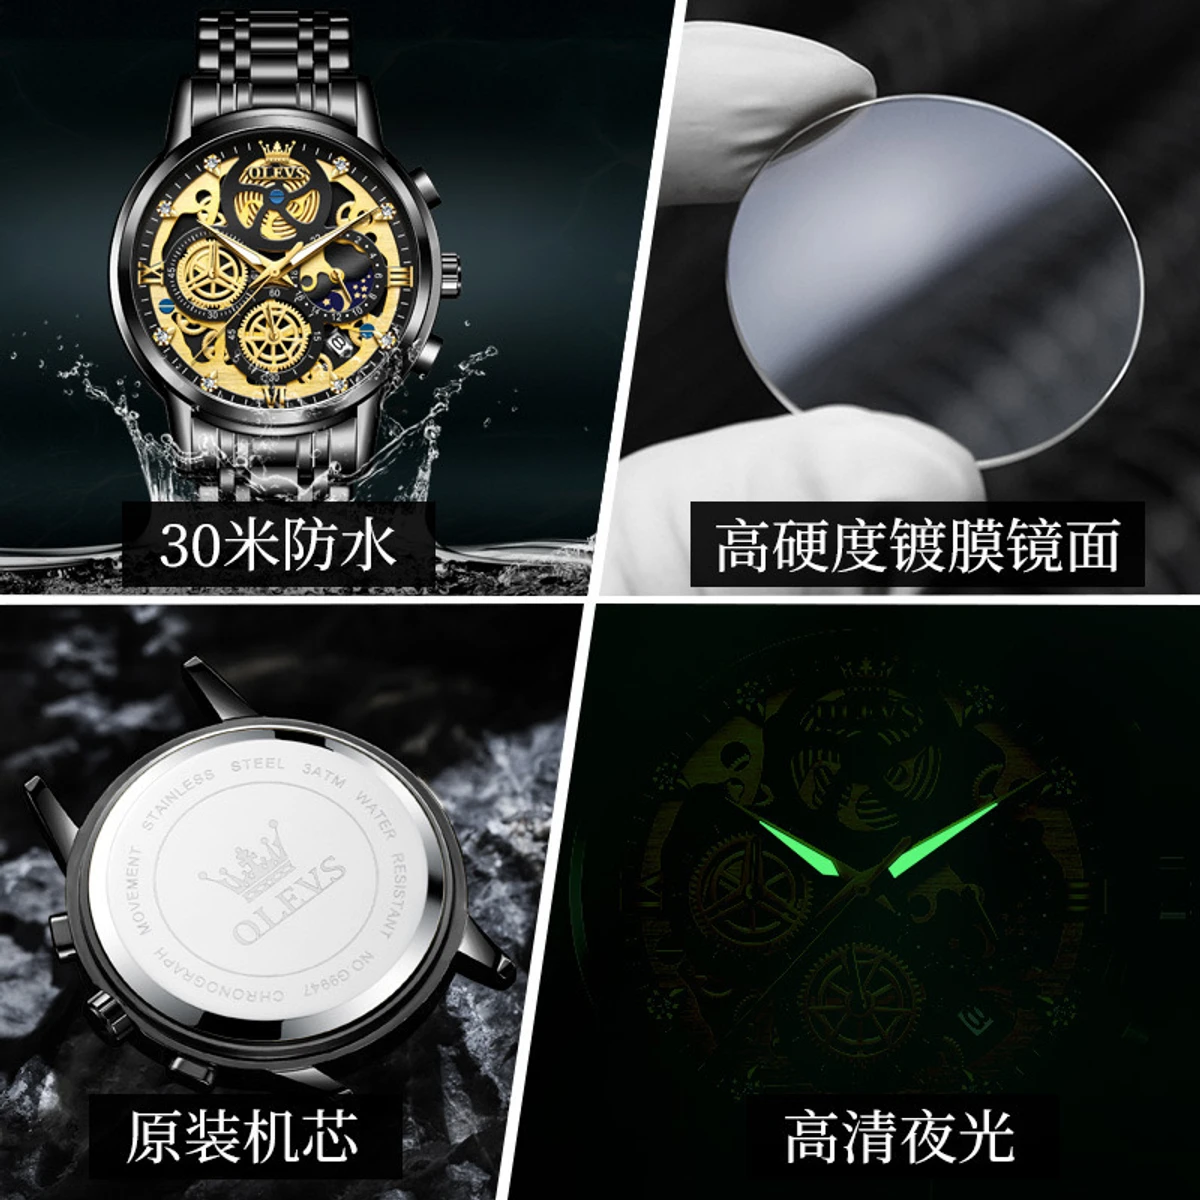 OLEVS Top Quartz Men's Brand Watch Luxury Watch Style Men's Watch- Black & Green